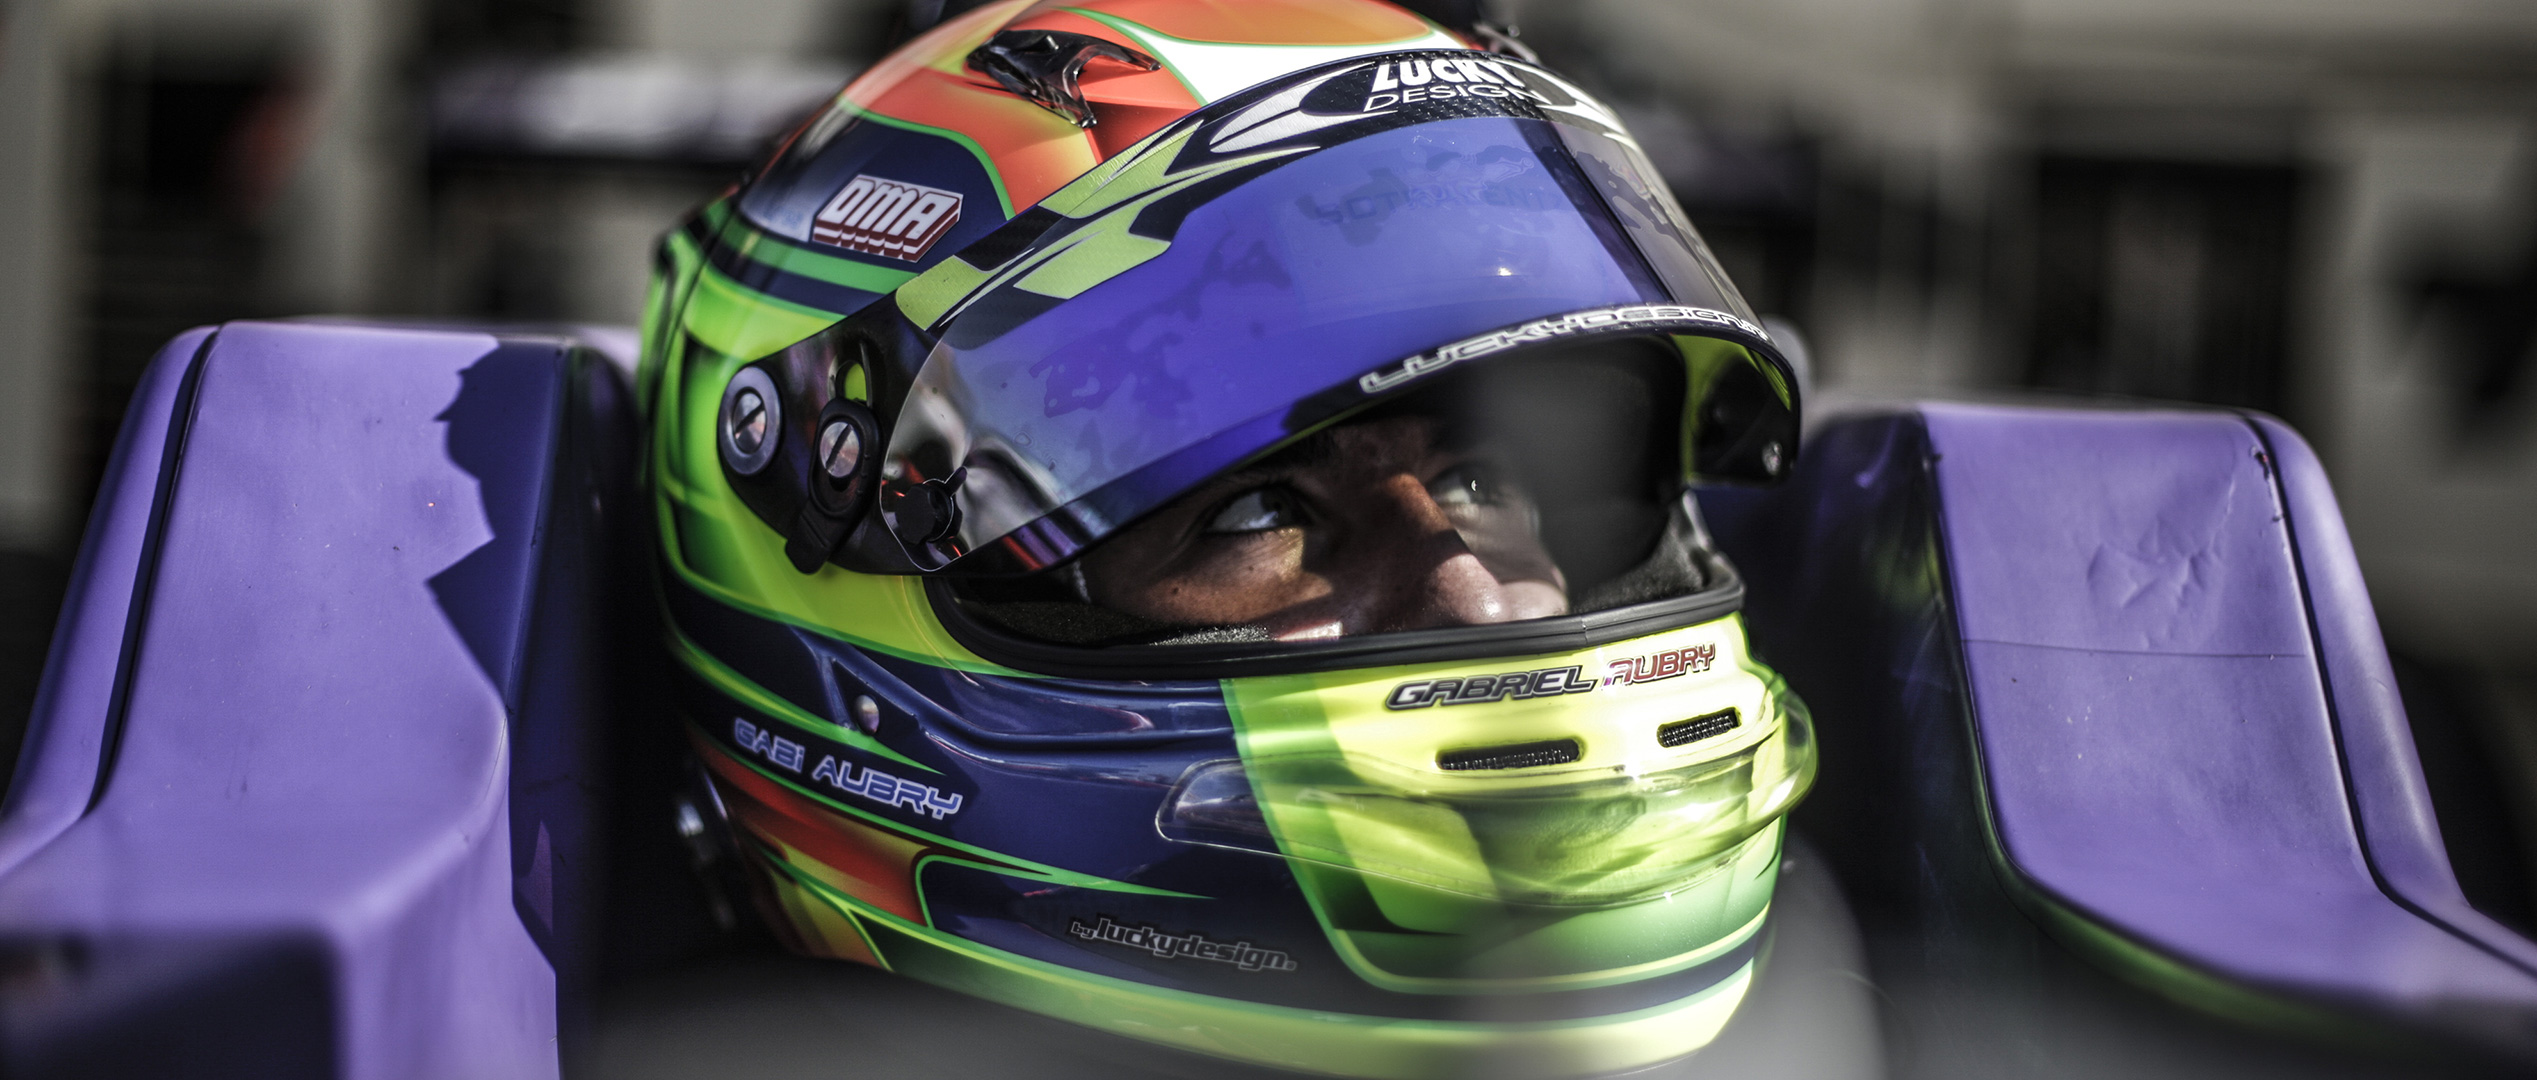 Motorland - Espagne - Gabriel Aubry - Gabi Aubry - Formule Renault 2.0 - Tech1